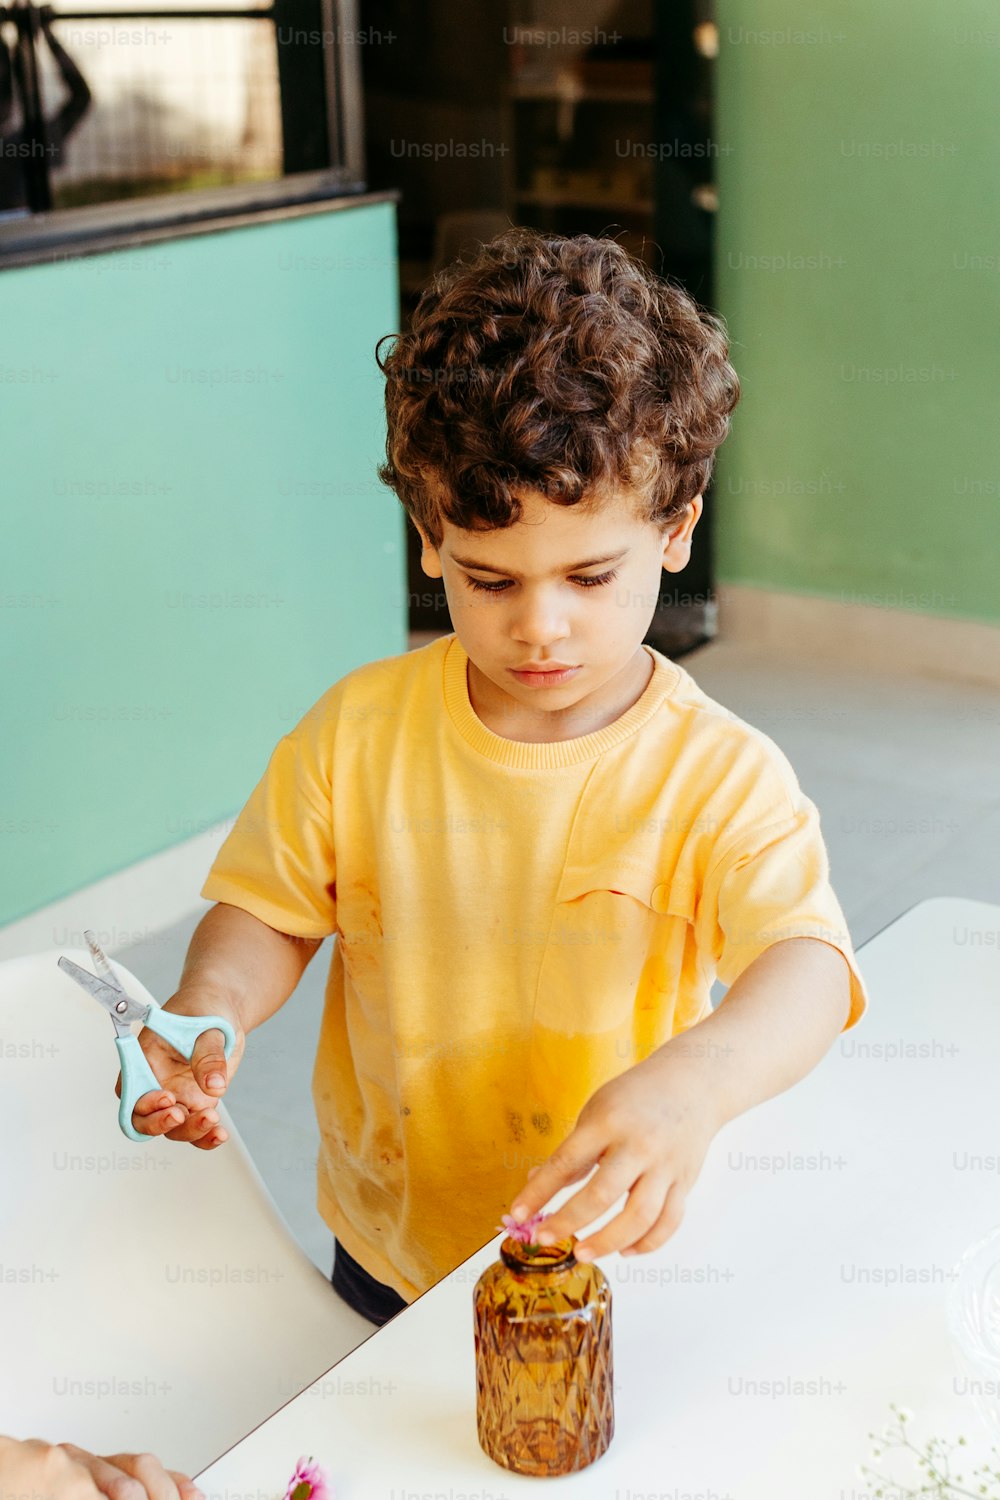 Ein kleiner Junge schneidet ein Stück Kuchen mit einer Schere